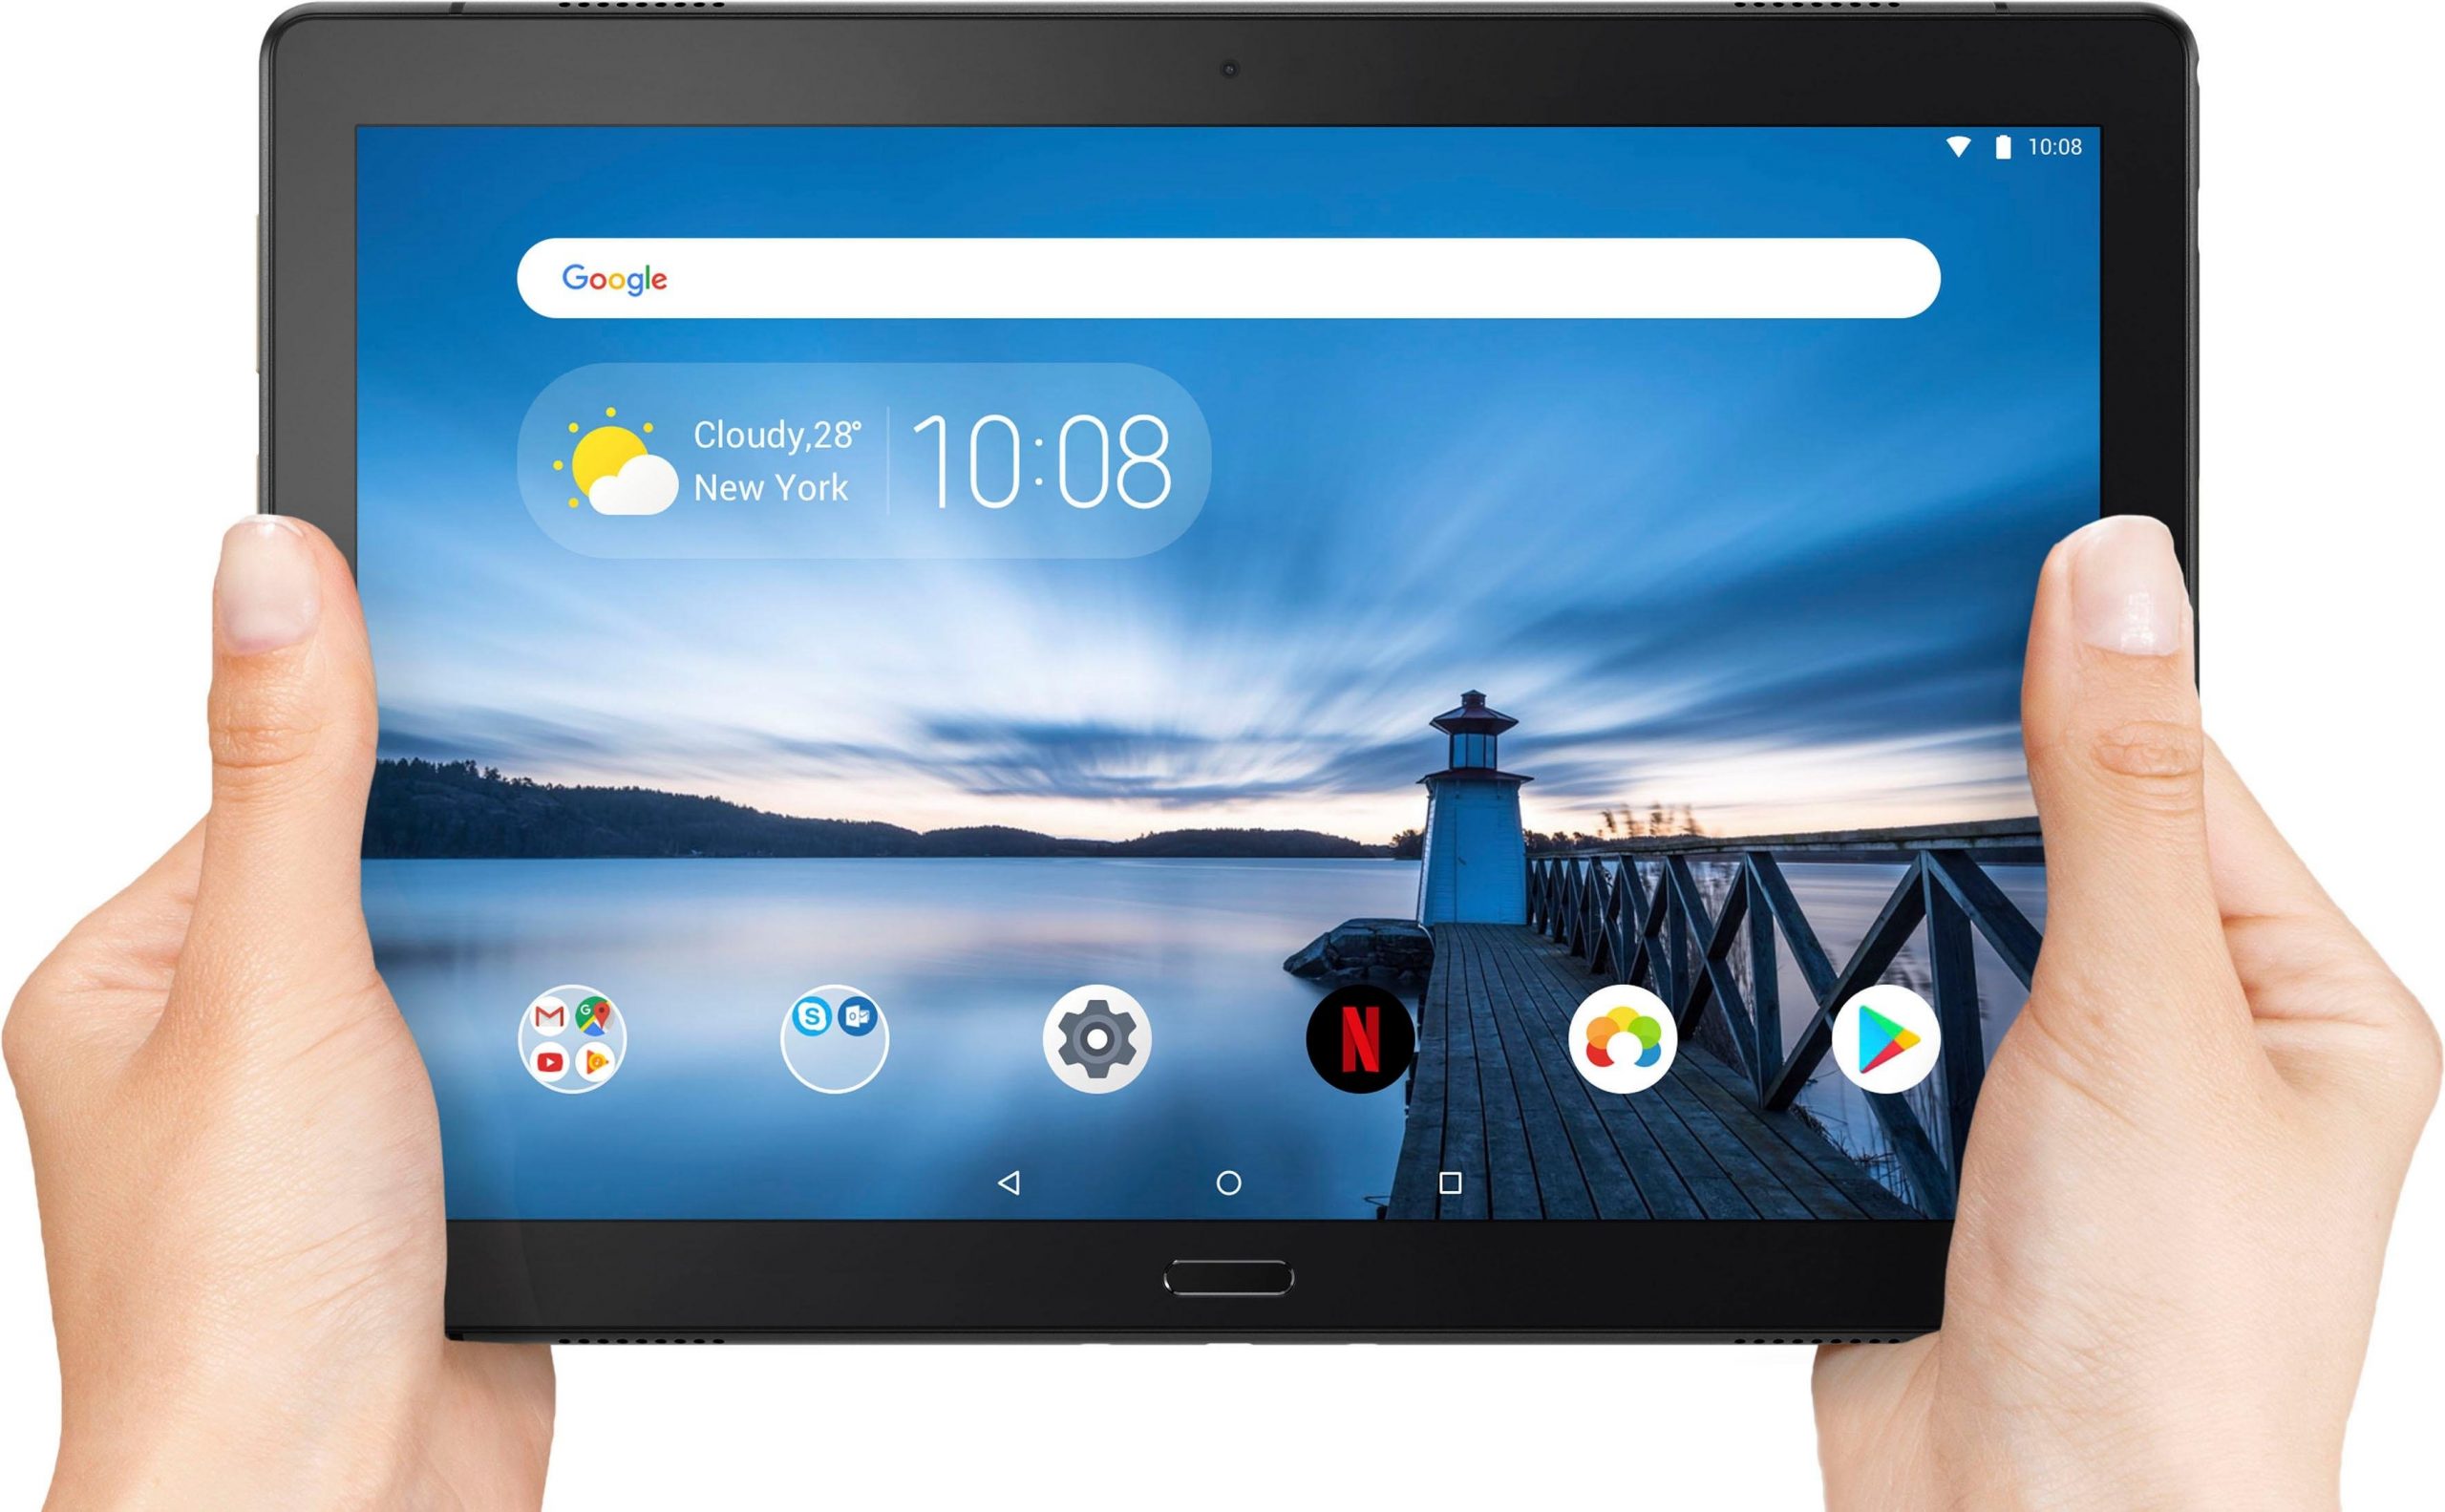 Waarom zijn Samsung Tablets zo populair geworden? En op welke site kun je deze gemakkelijk met elkaar vergelijken?